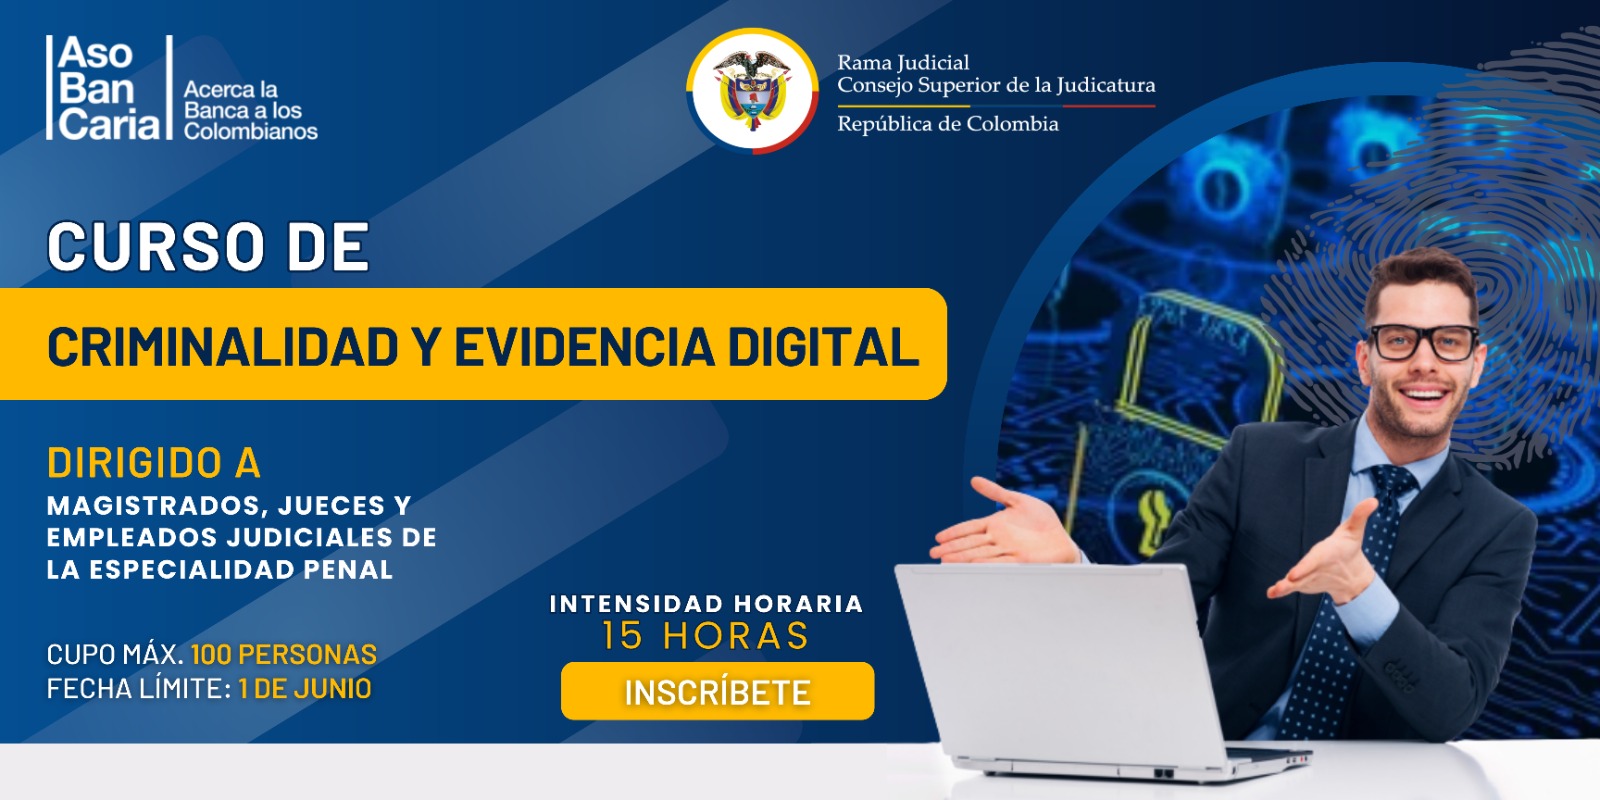 Invitación para servidores judiciales de la especialidad penal a participar en el curso de Criminalidad y Evidencia Digital